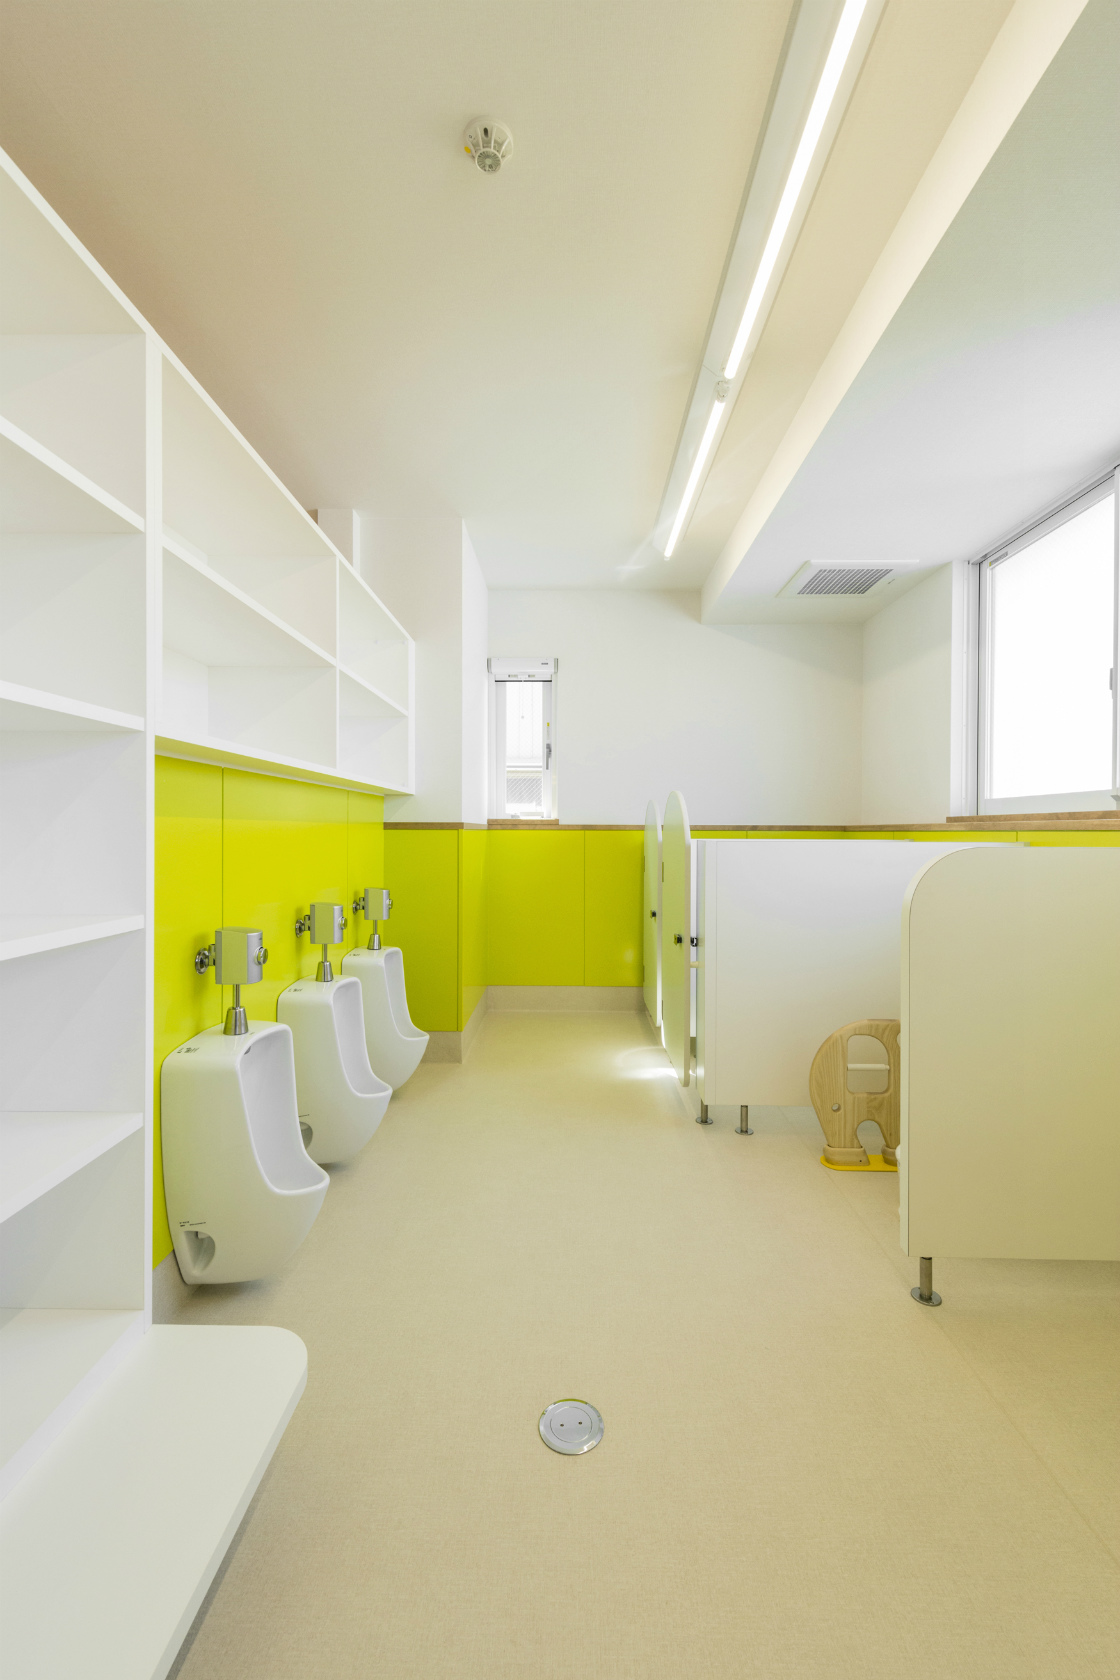 名古屋市港区の保育施設の棚の多い鮮やかな子ども用トイレ